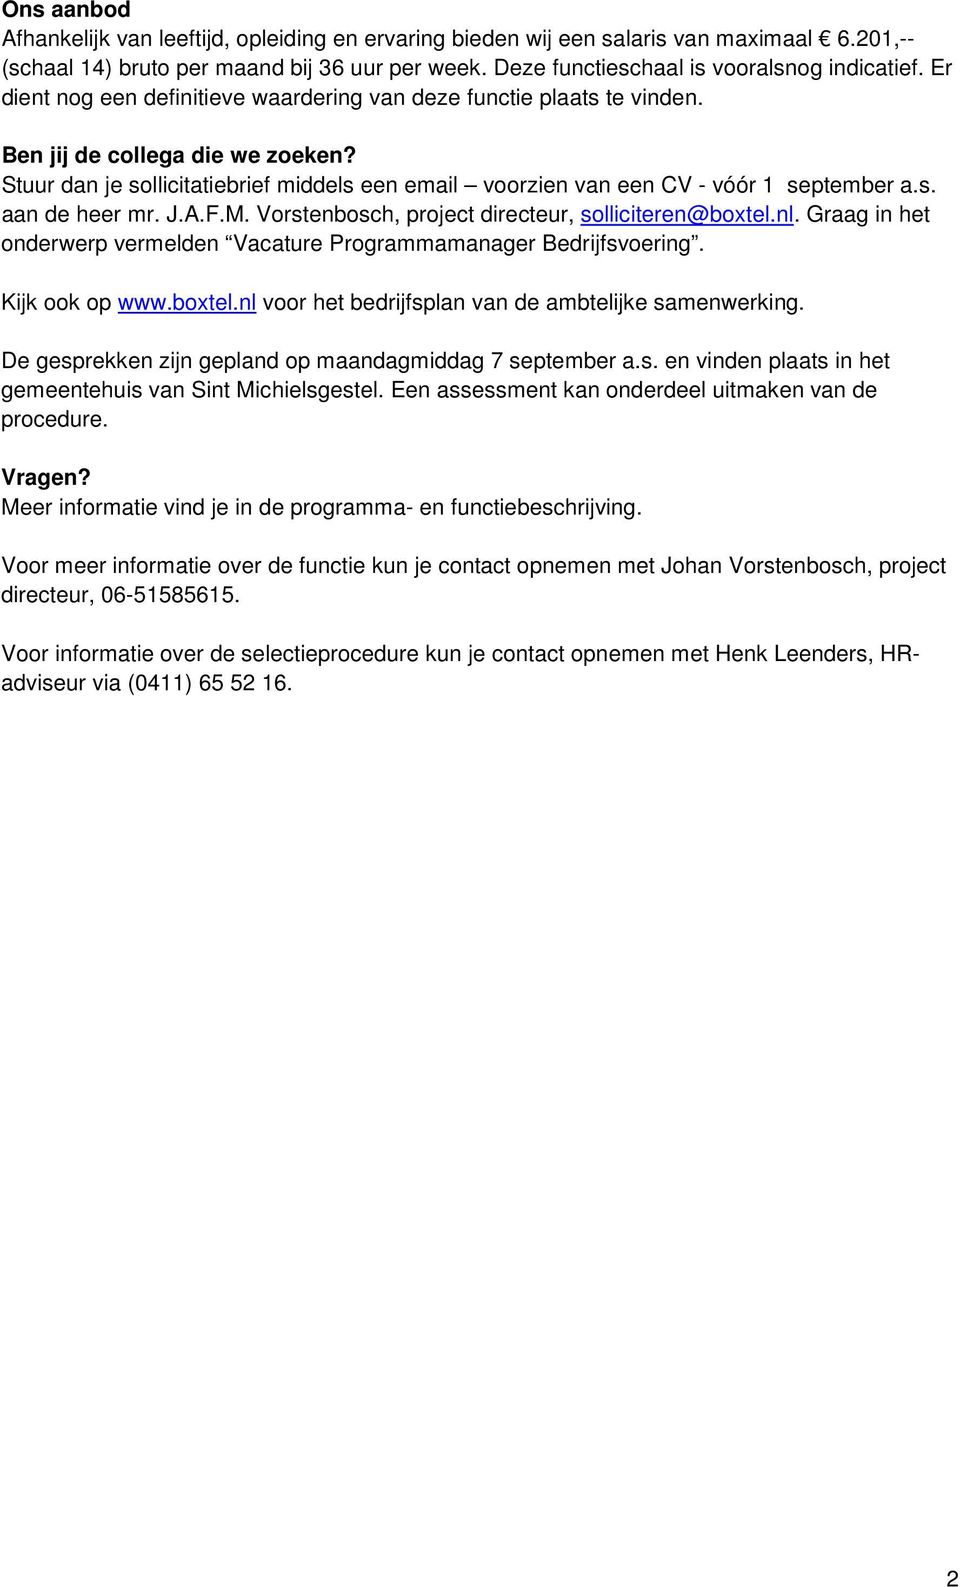 s. aan de heer mr. J.A.F.M. Vorstenbosch, project directeur, solliciteren@boxtel.nl. Graag in het onderwerp vermelden Vacature Programmamanager Bedrijfsvoering. Kijk ook op www.boxtel.nl voor het bedrijfsplan van de ambtelijke samenwerking.